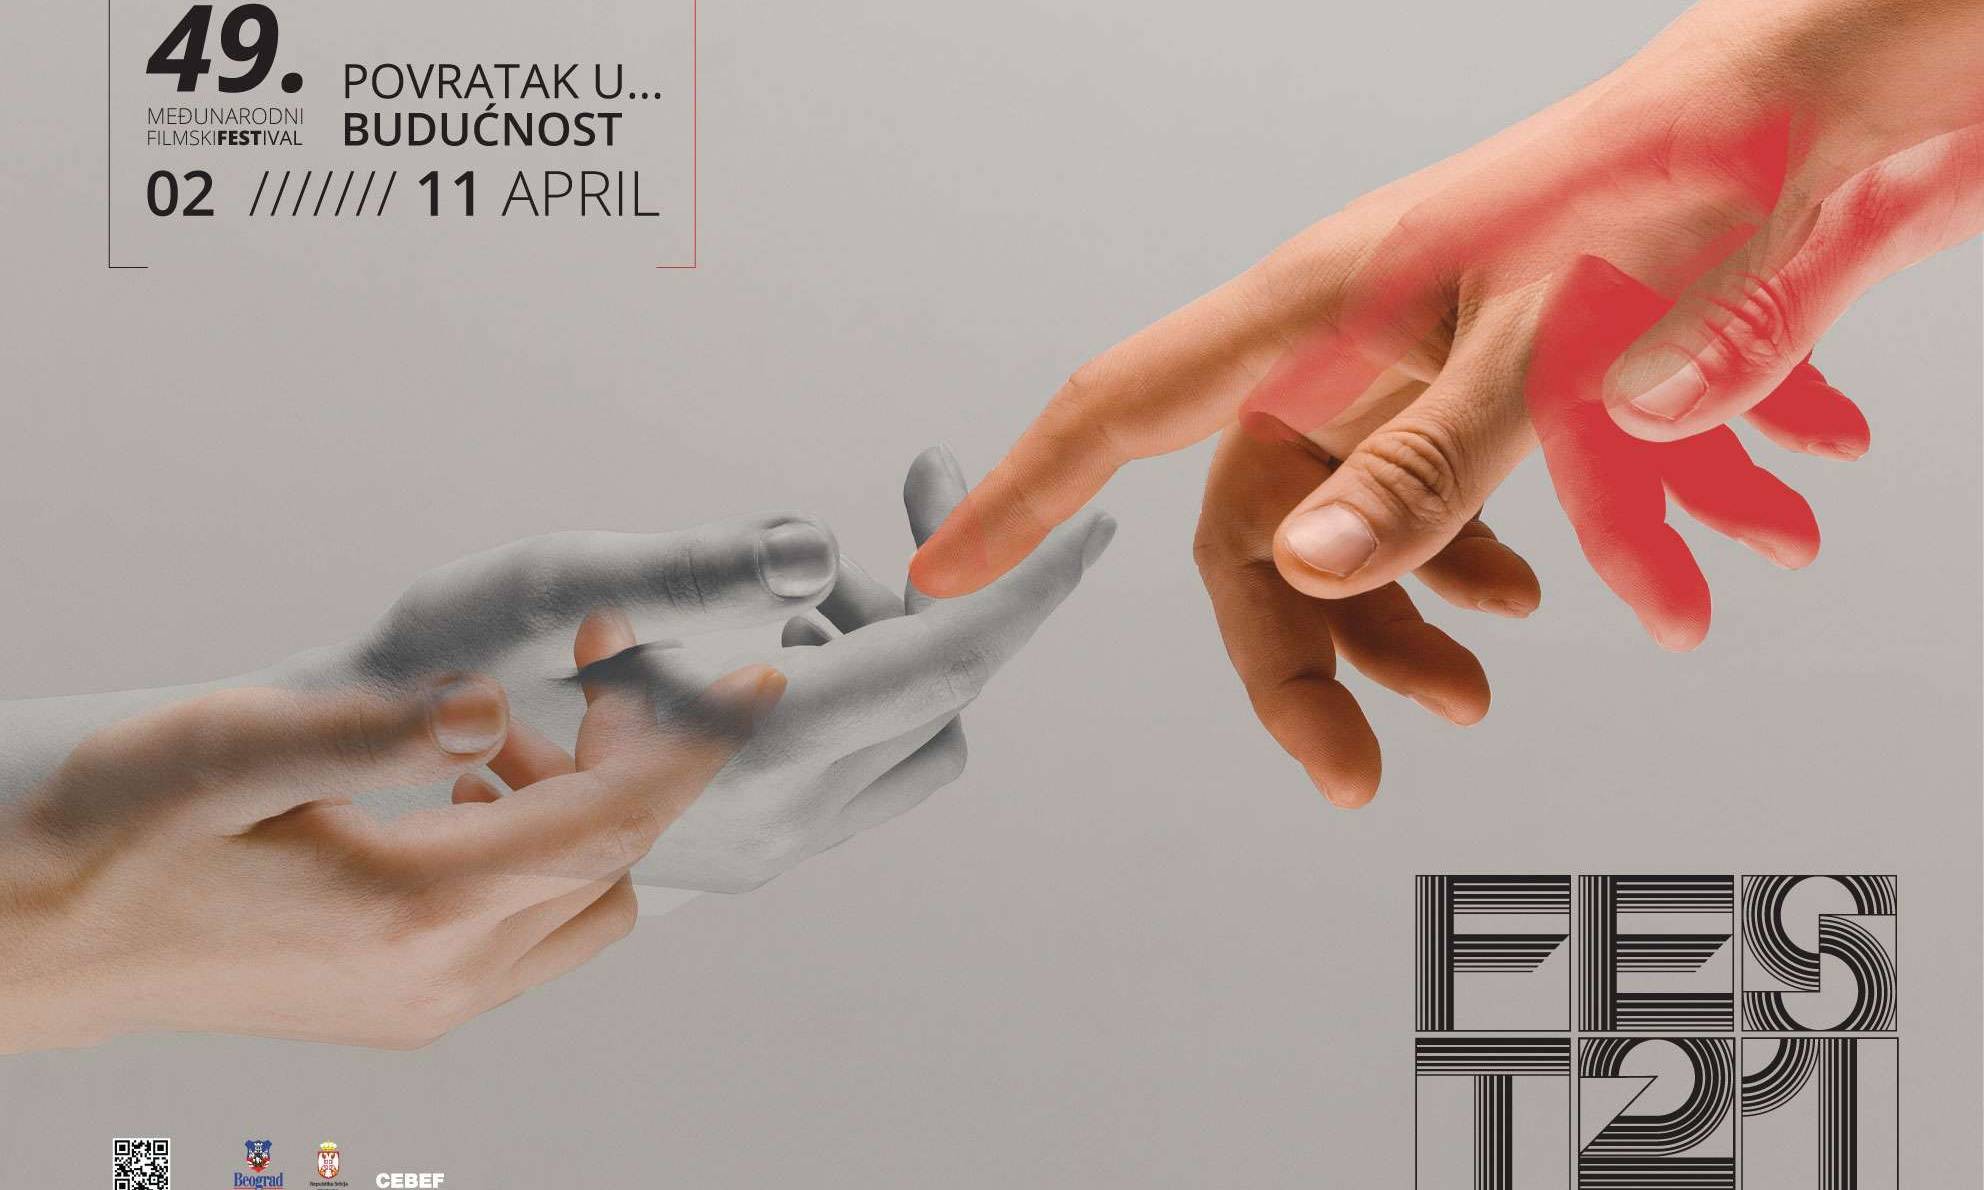 Belgrade FEST - Back to the future